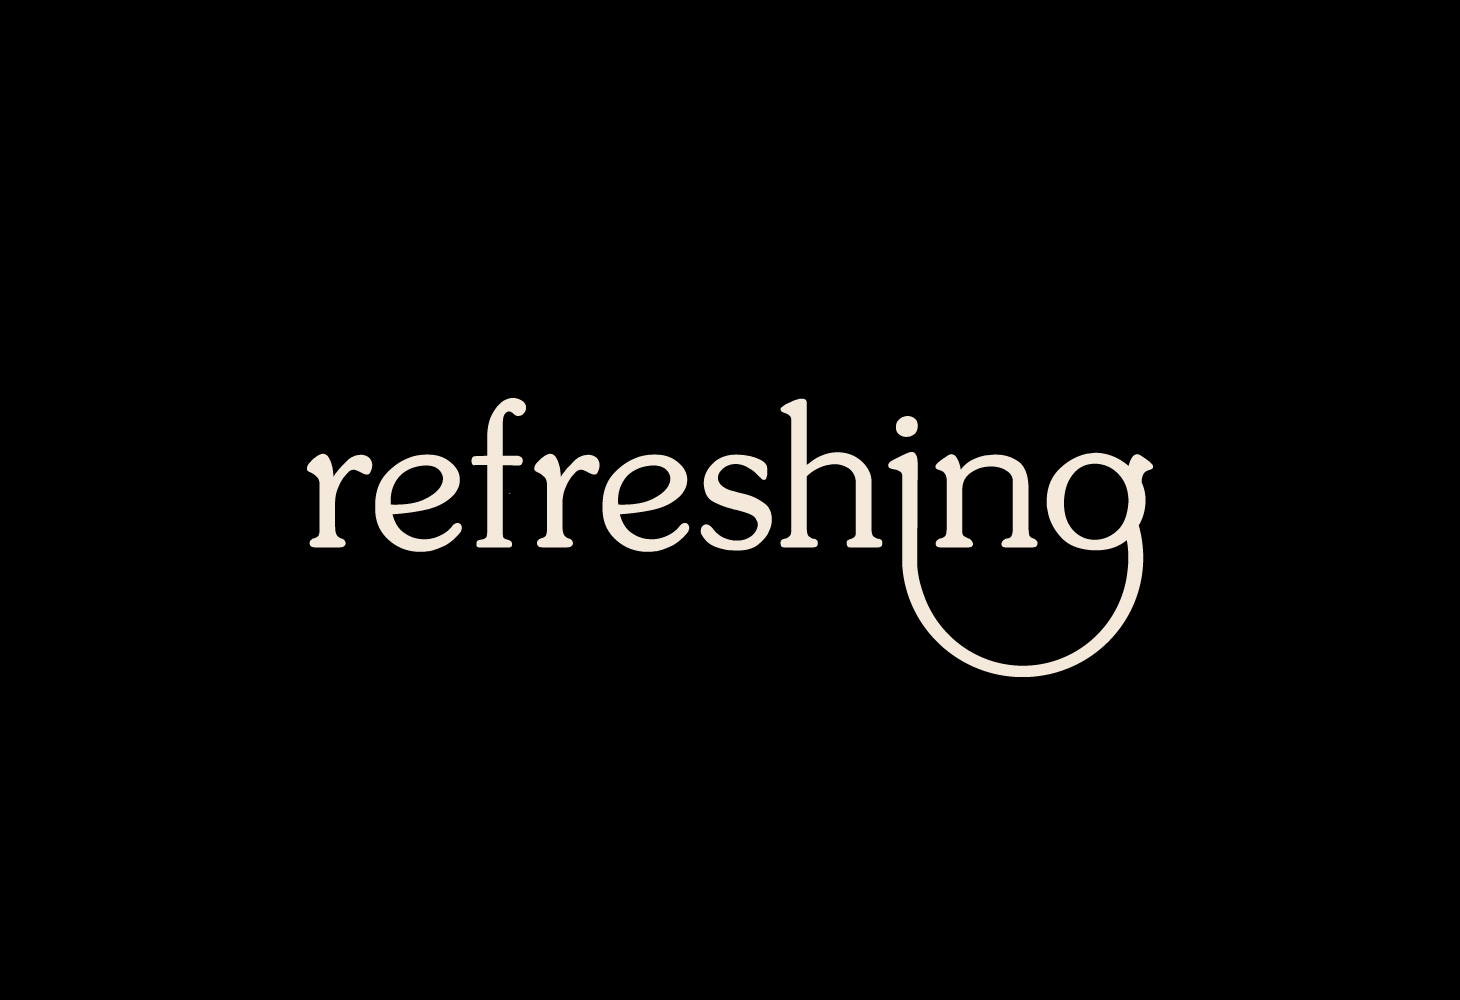 Refreshing - Logotype